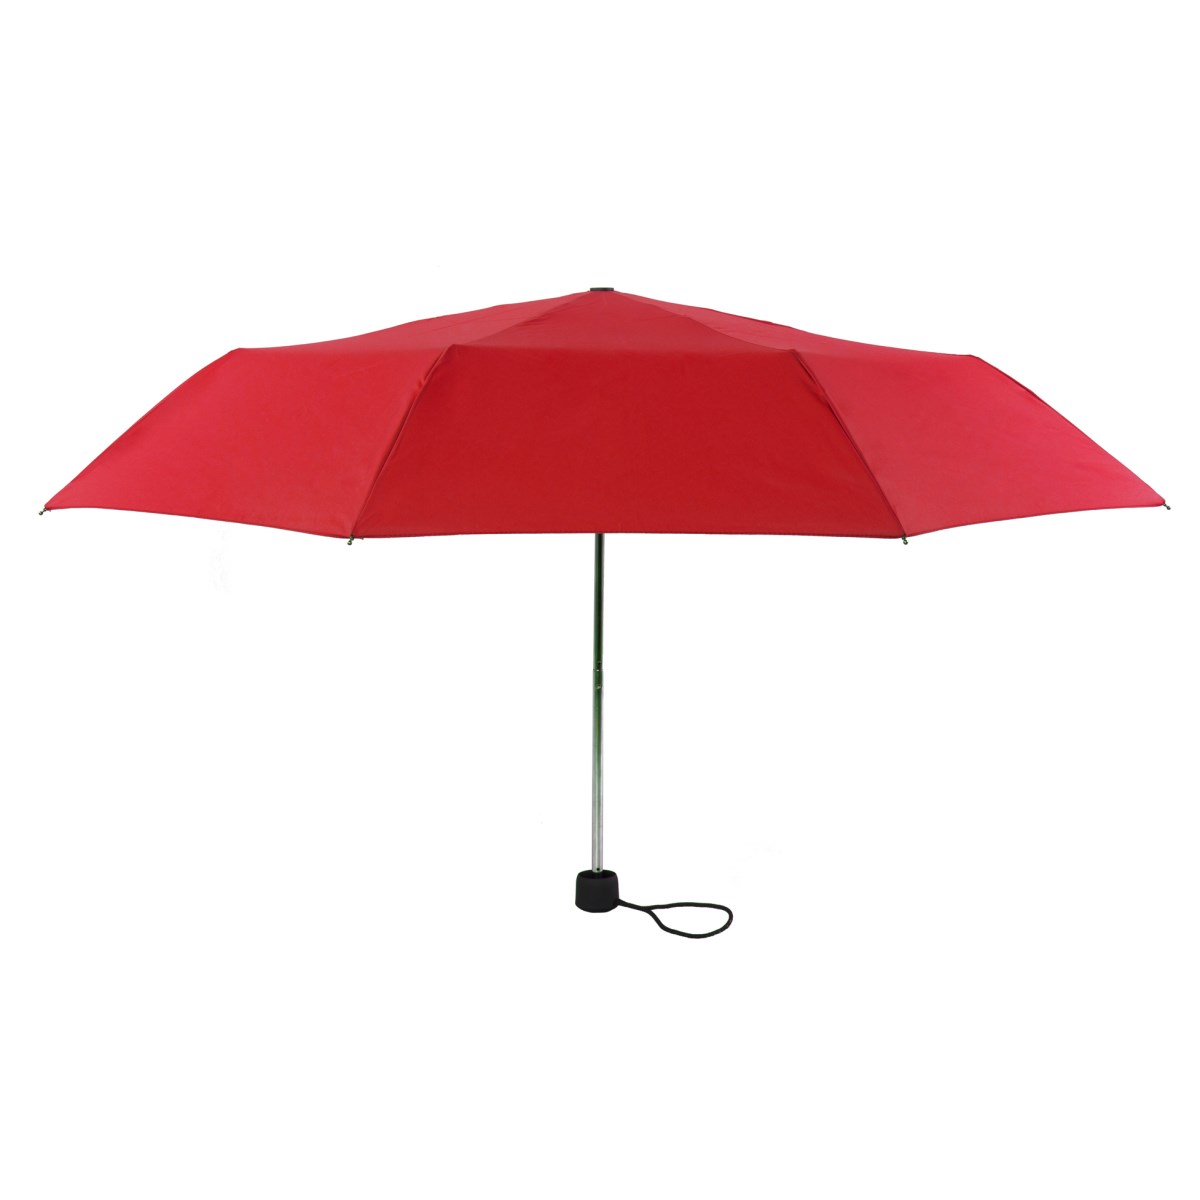 telescopic ladies red umbrellas wholesale ..